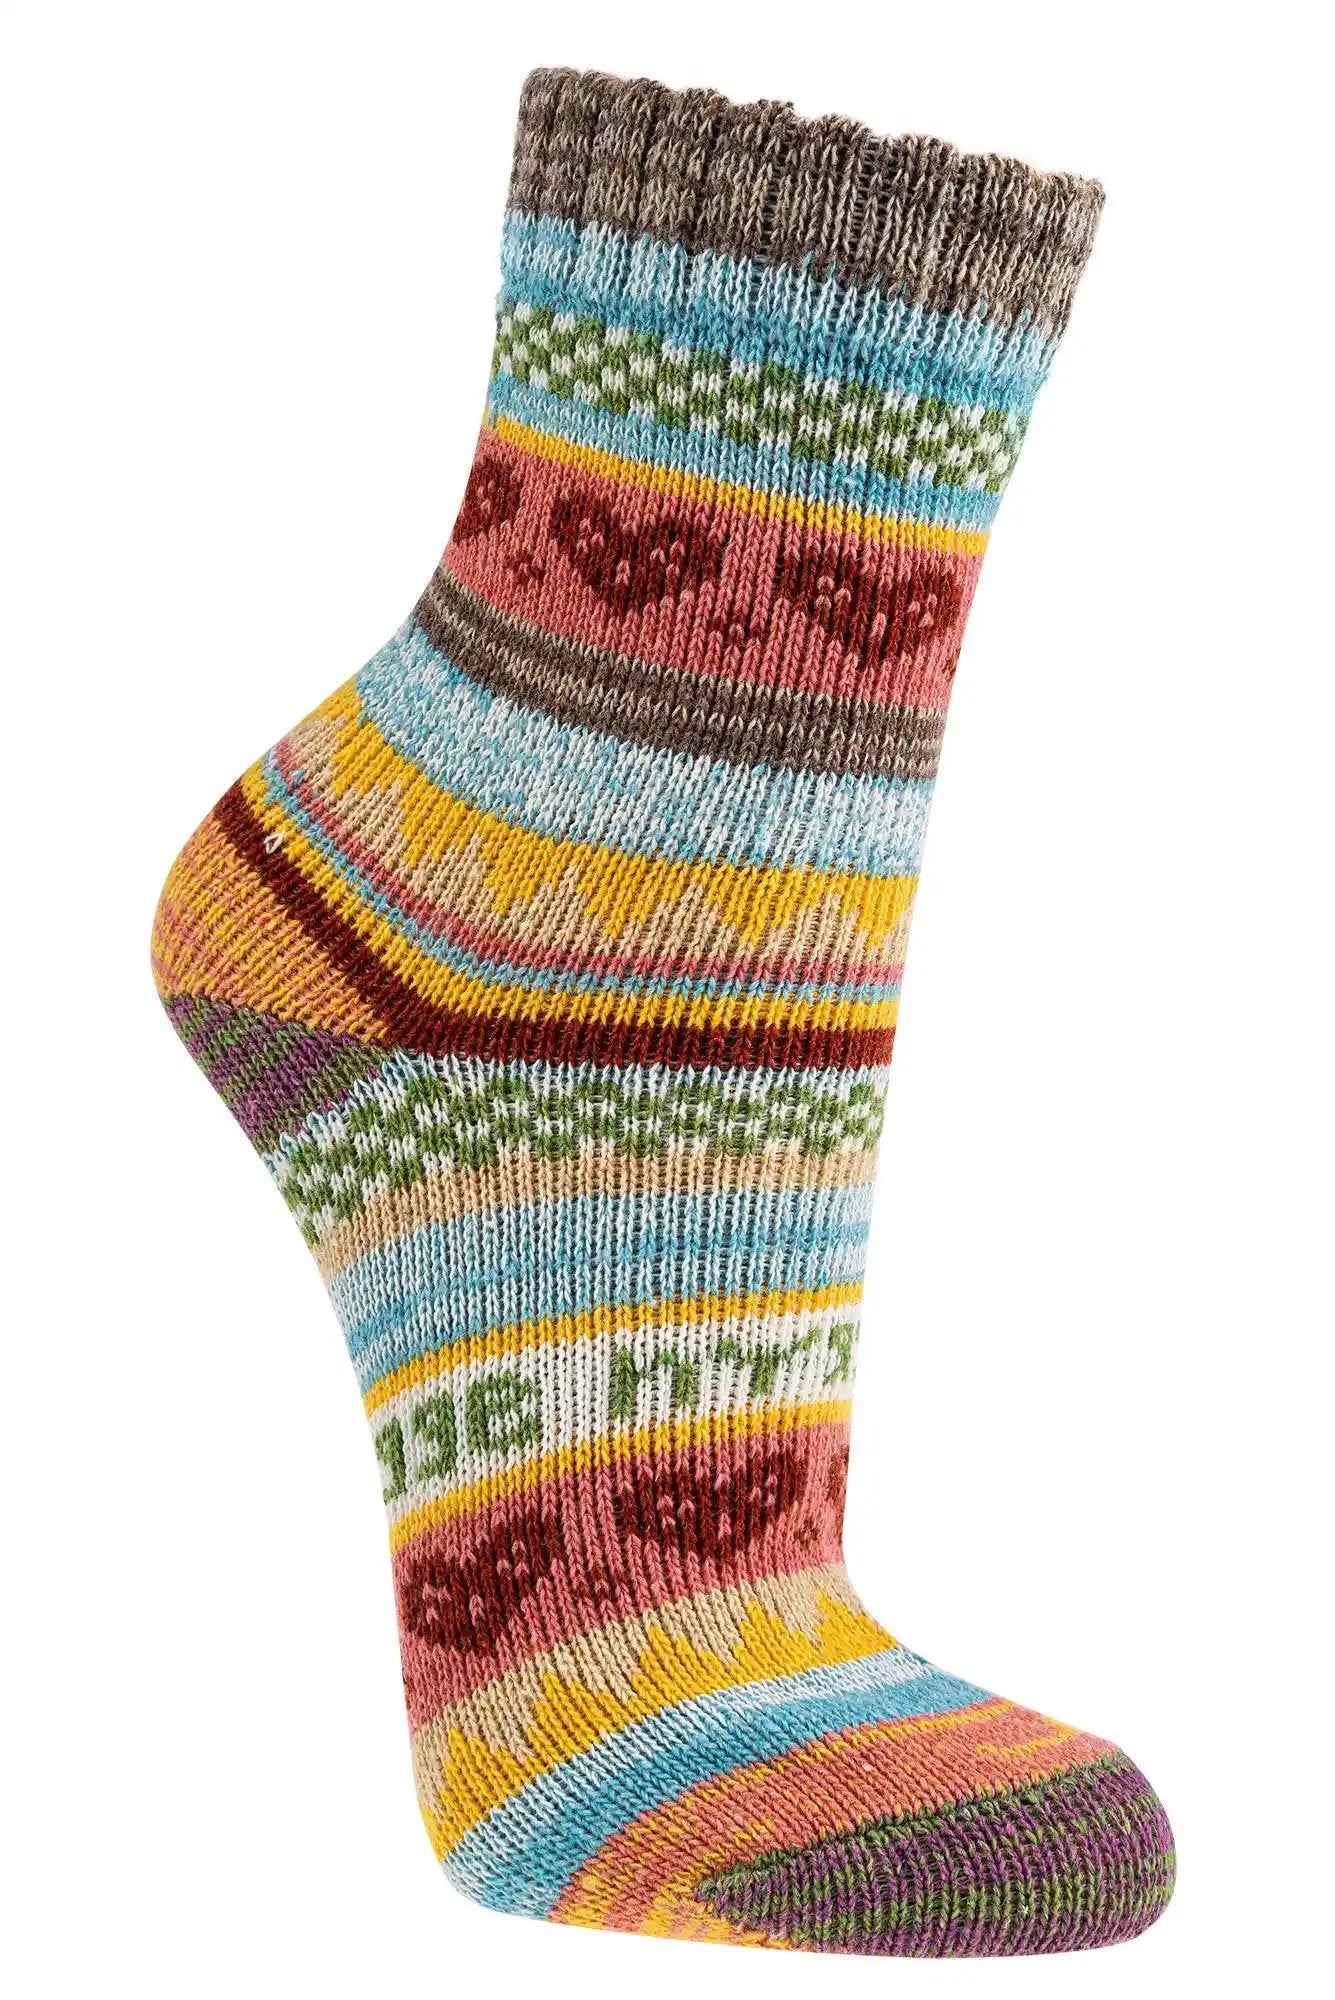 3 o 6 pares de calcetines noruegos de colores con un bonito estampado hygge, fabricados con 90% algodón